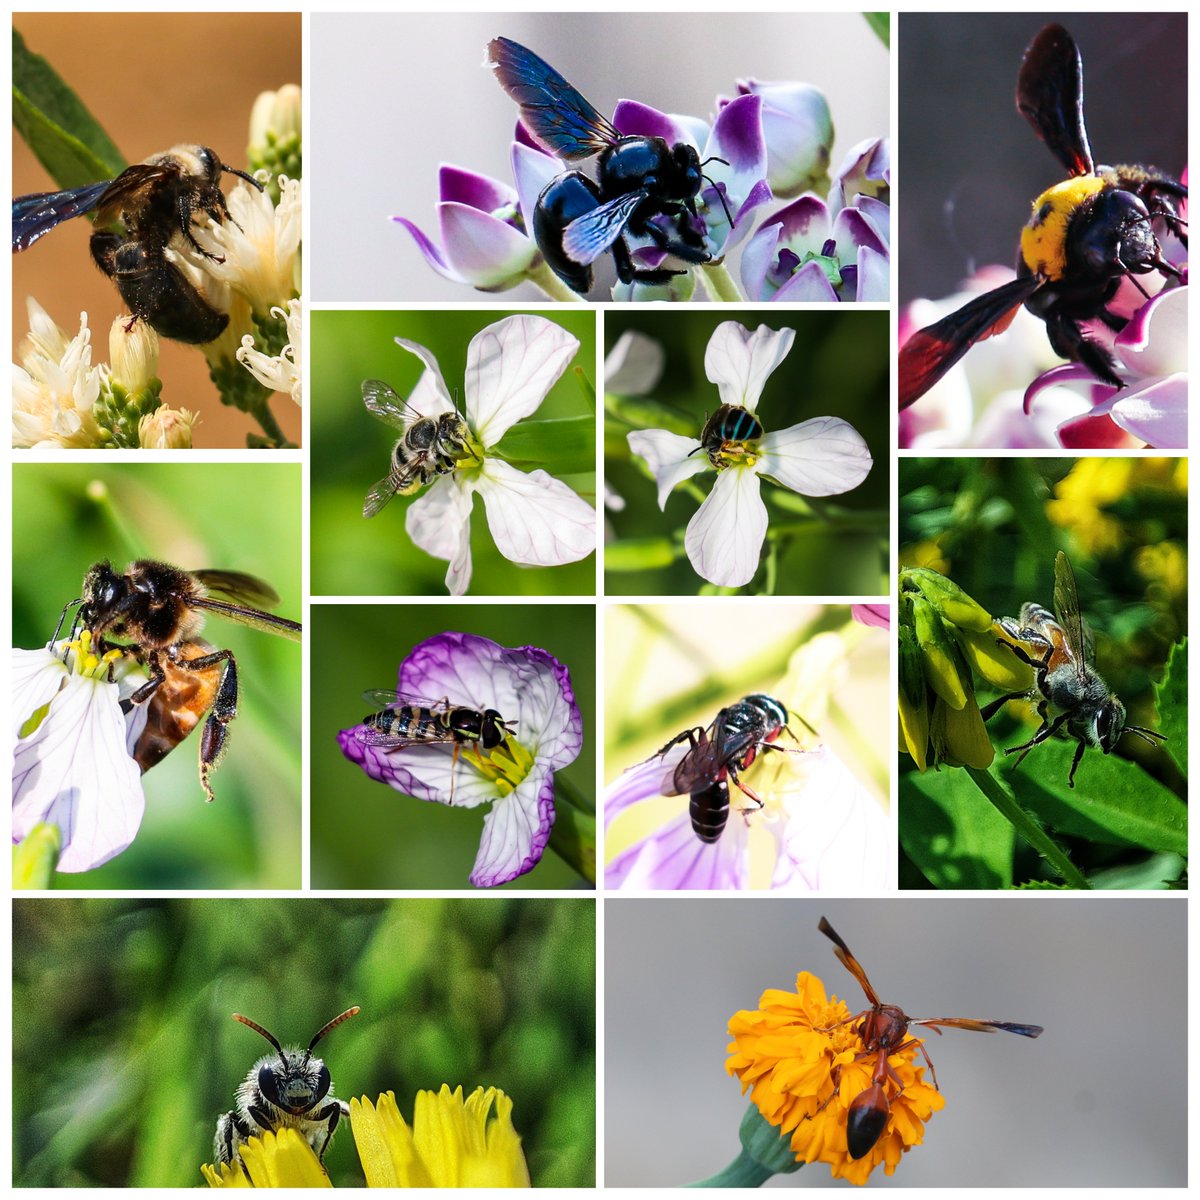 #WorldBeeDay 🐝

#canon #bees #beeday #photooftheday #ThePhotoHour #IndiAves #natgeo #MacroHour